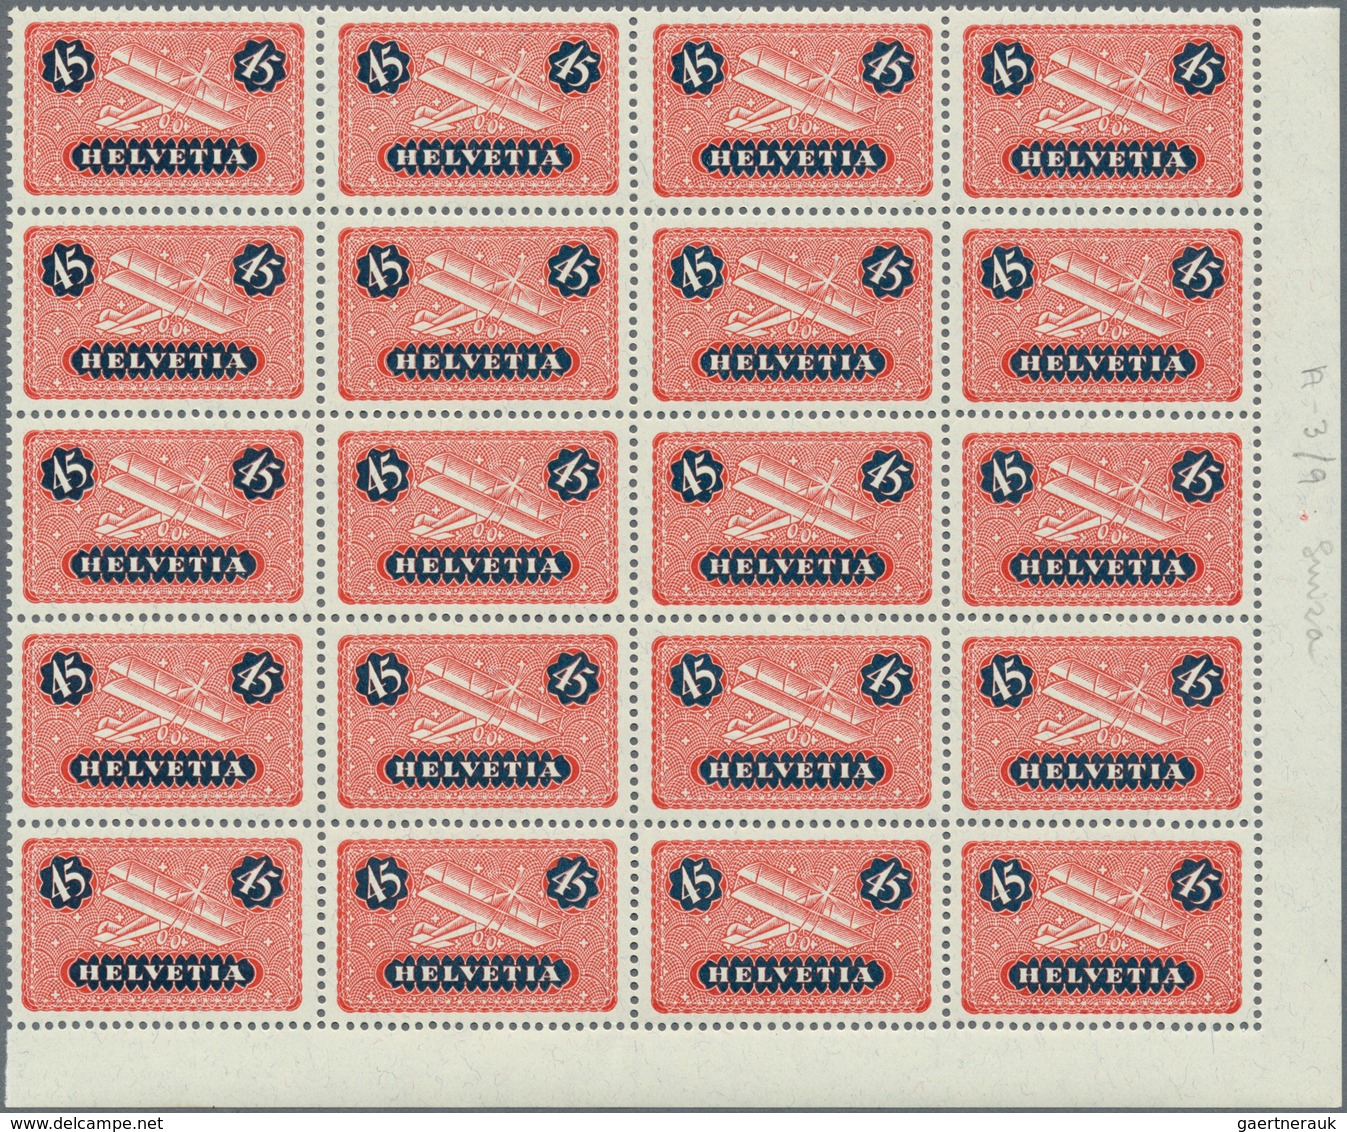 Schweiz: 1923-25 Flugpost-Satz von 7 Werten, von 15 Rp. bis 50 Rp. inkl. 20 Rp. auf glattem Papier,